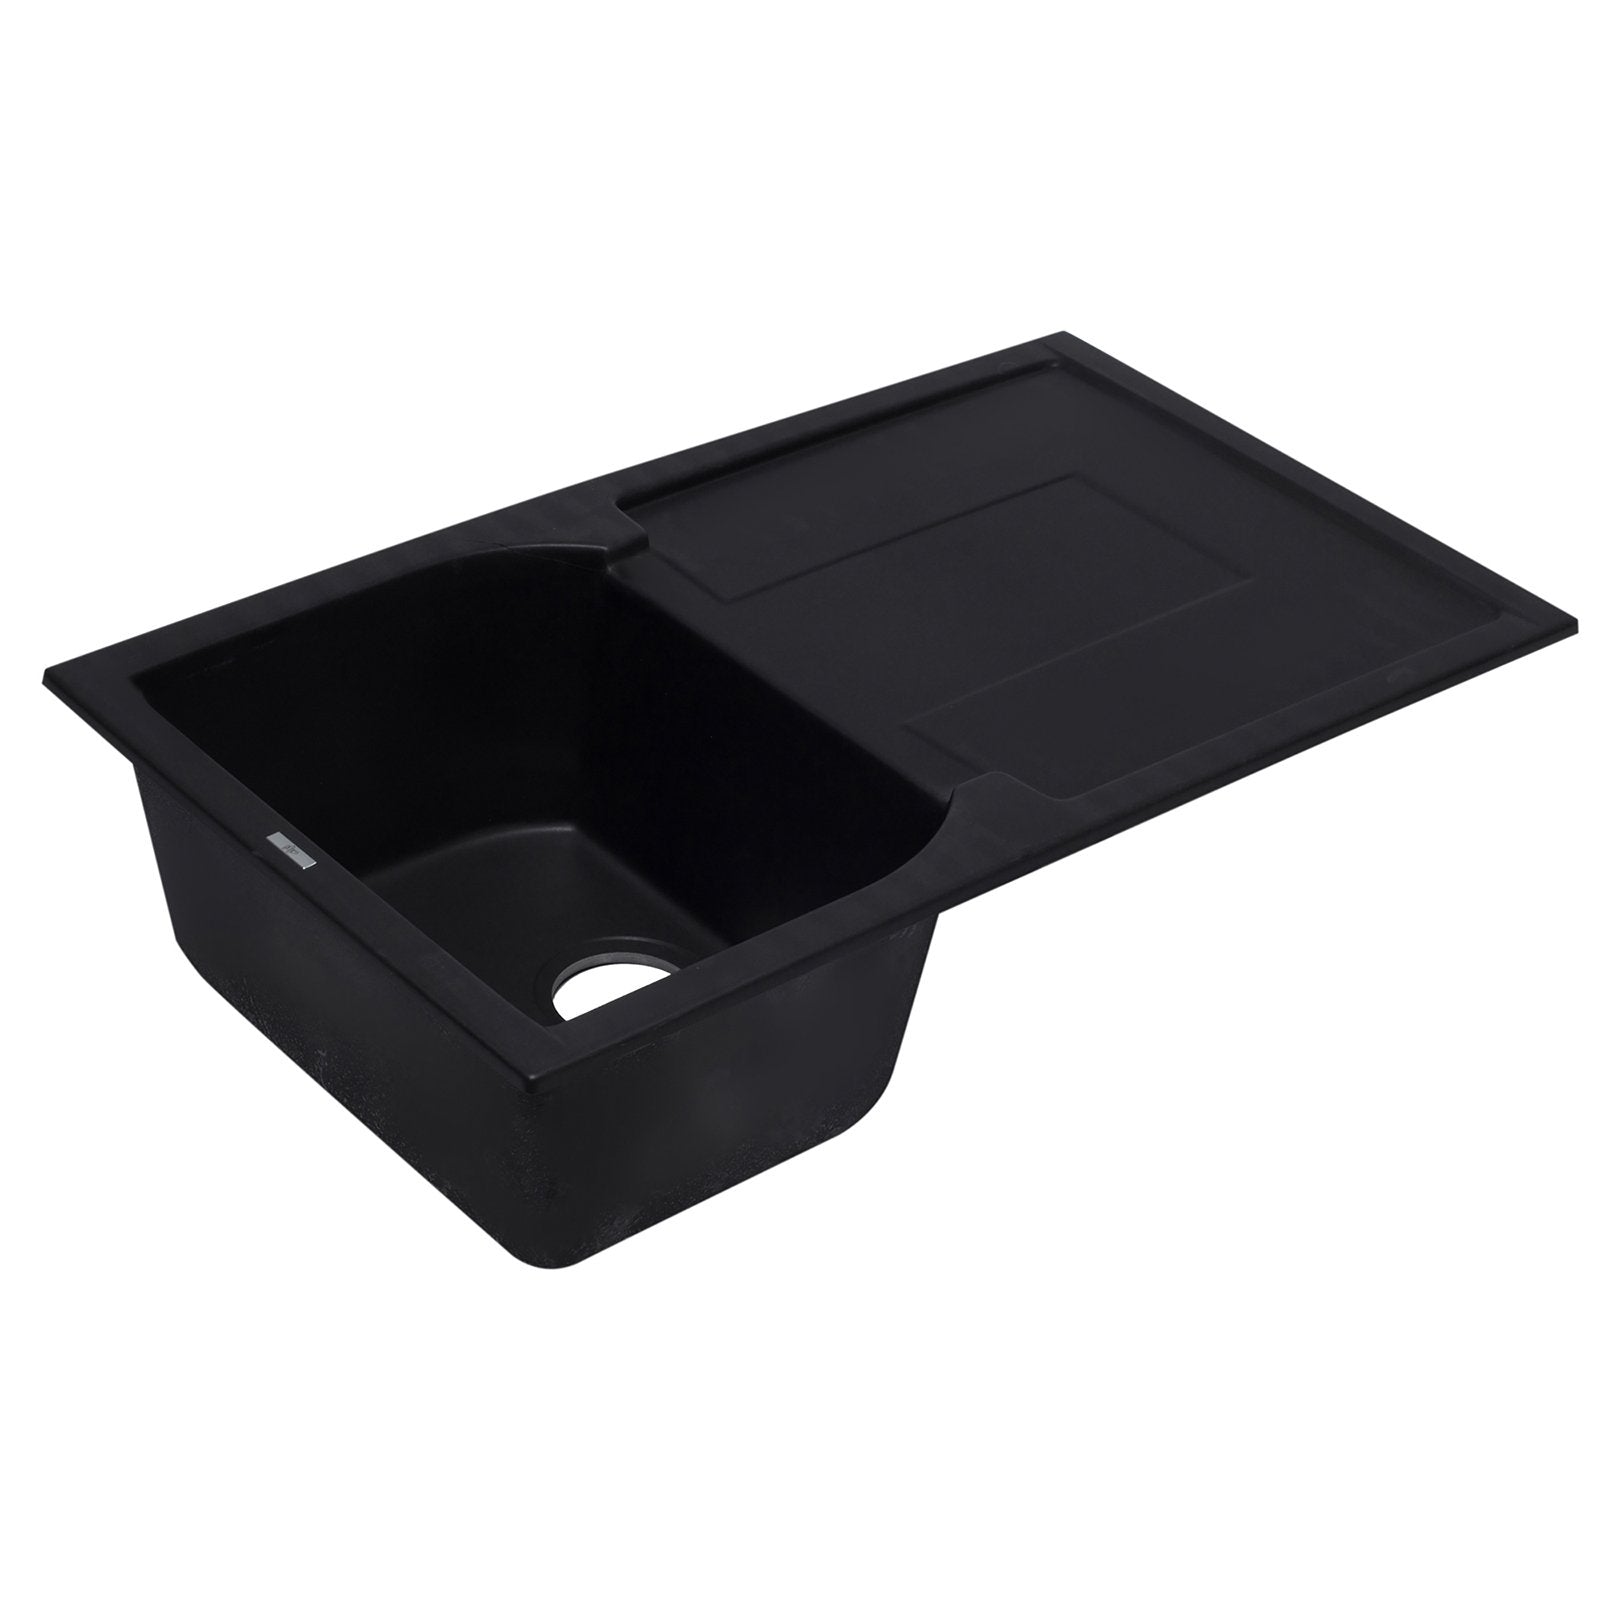 ALFI, ALFI AB1620DI-BLA Black 34" Single Bowl Granite Composite Sink with Drainboard